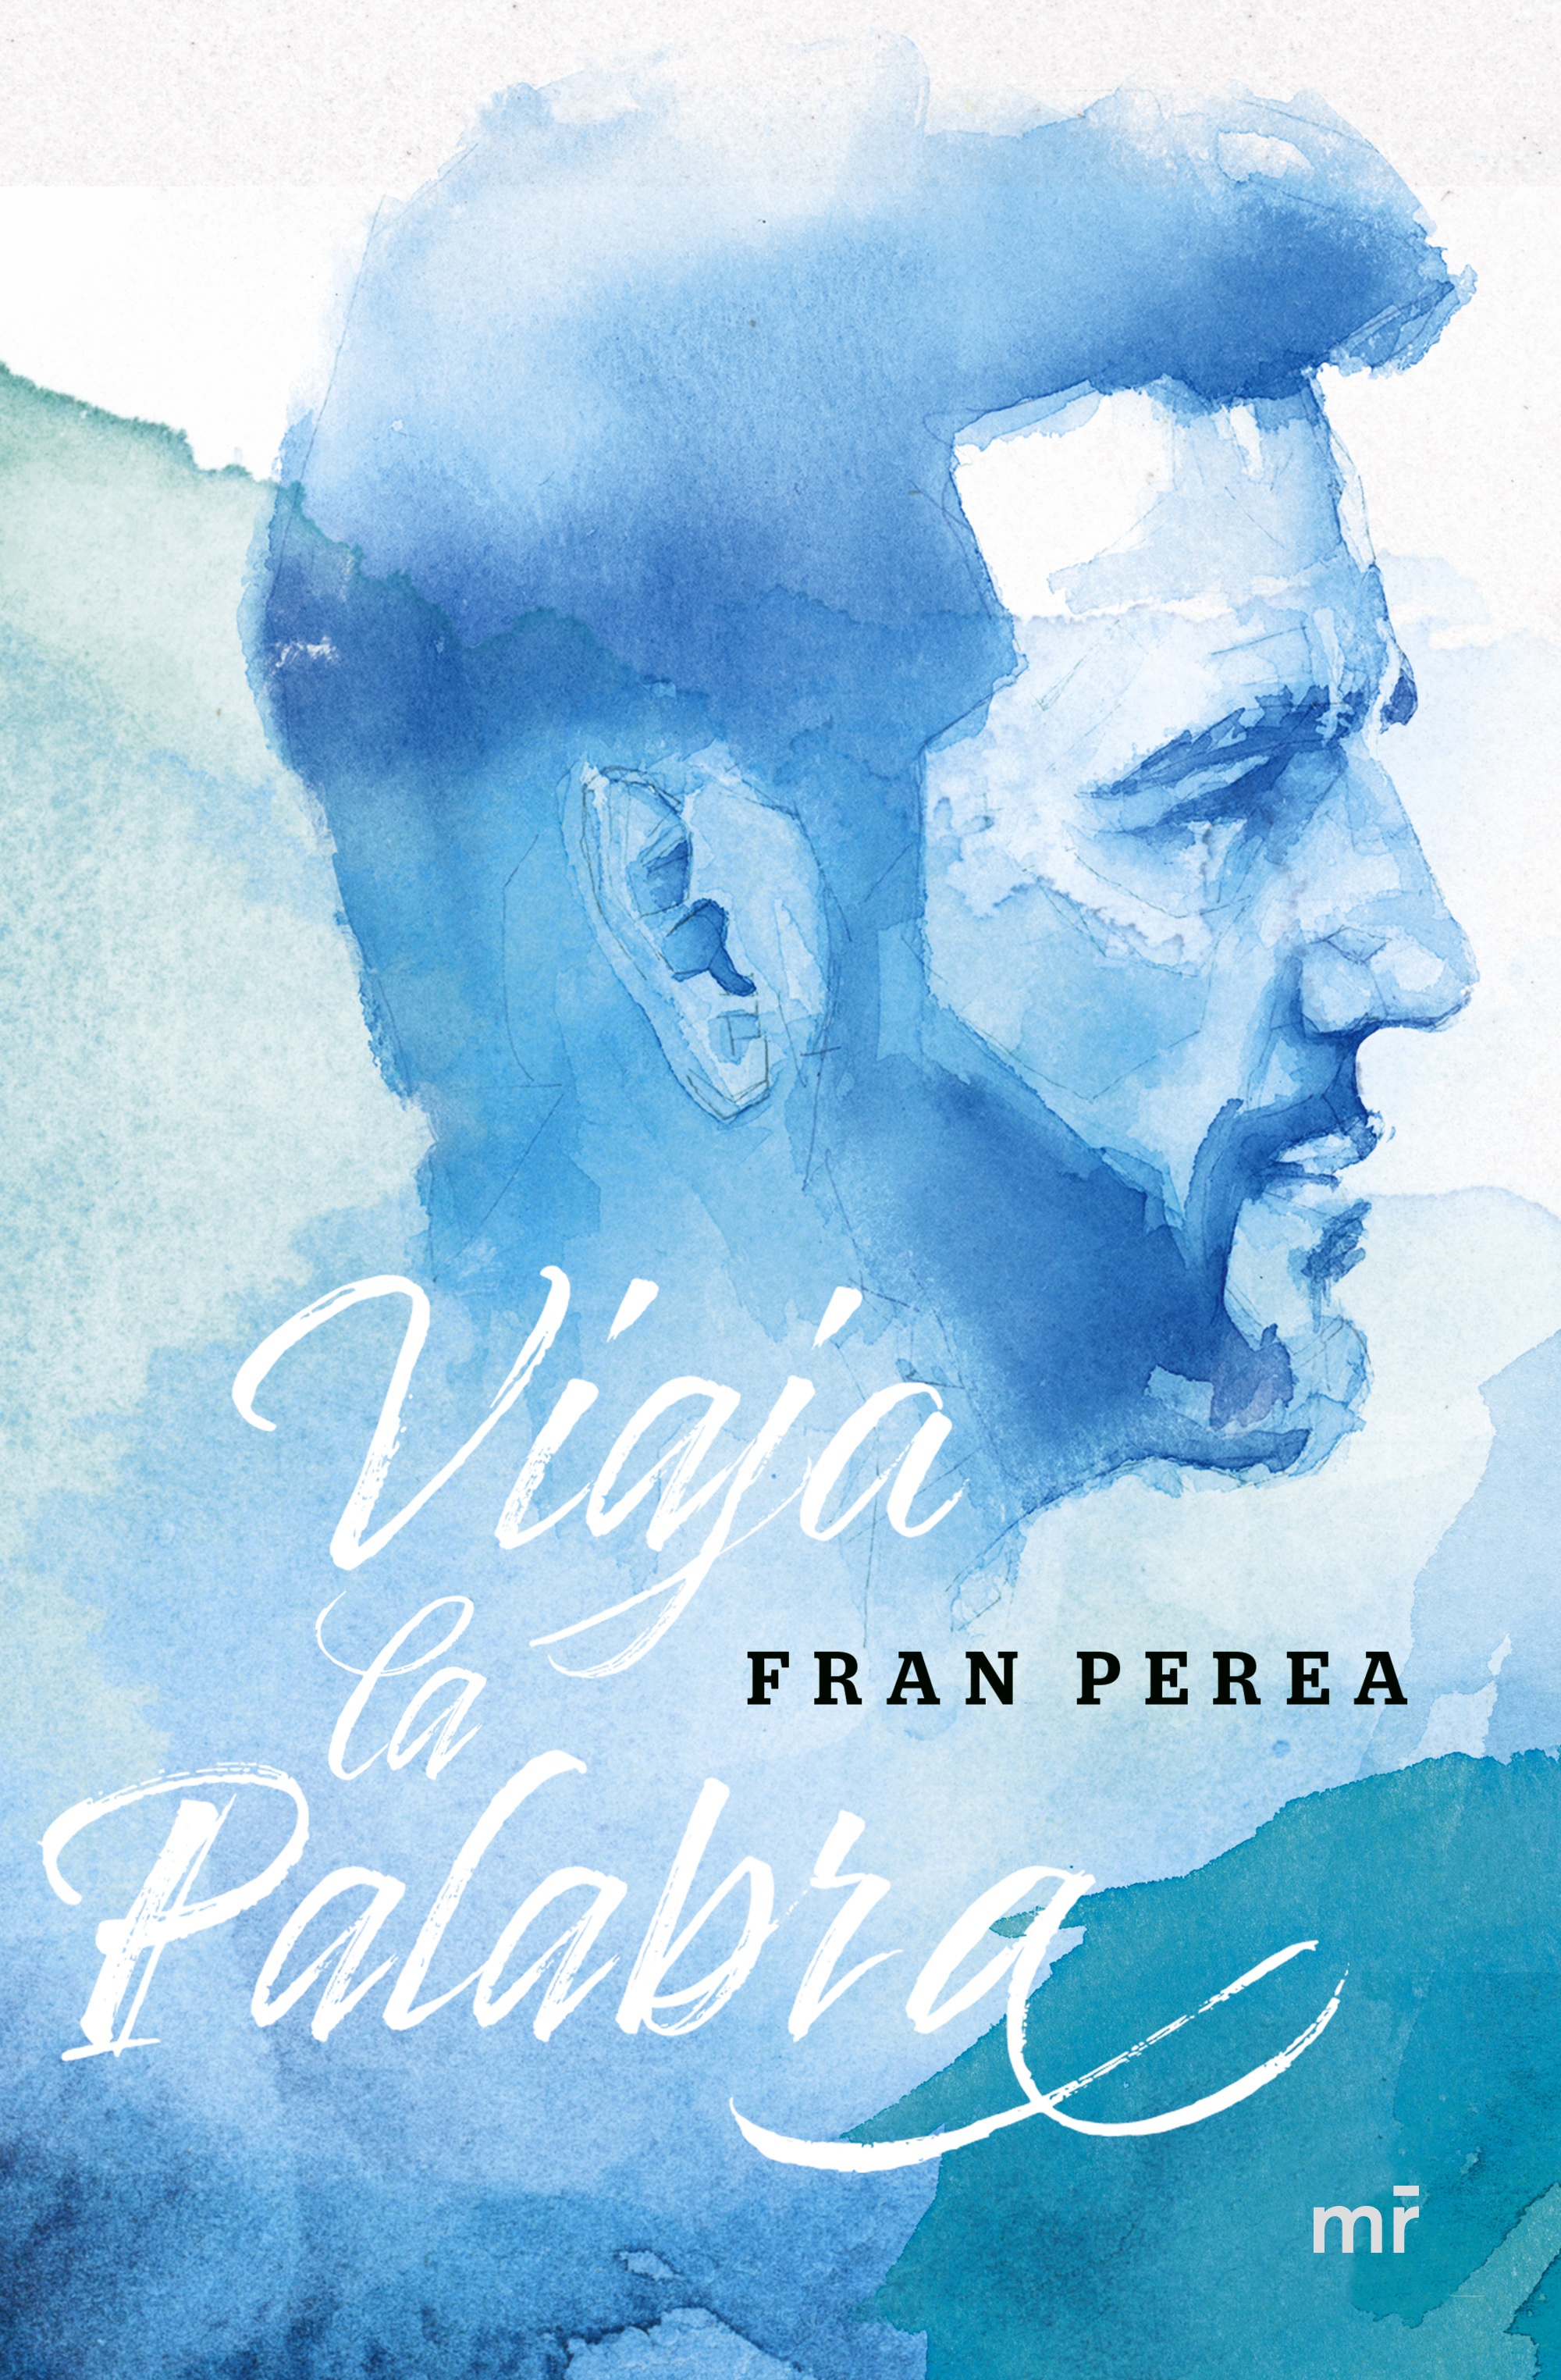 Fran Perea: Viaja la palabra